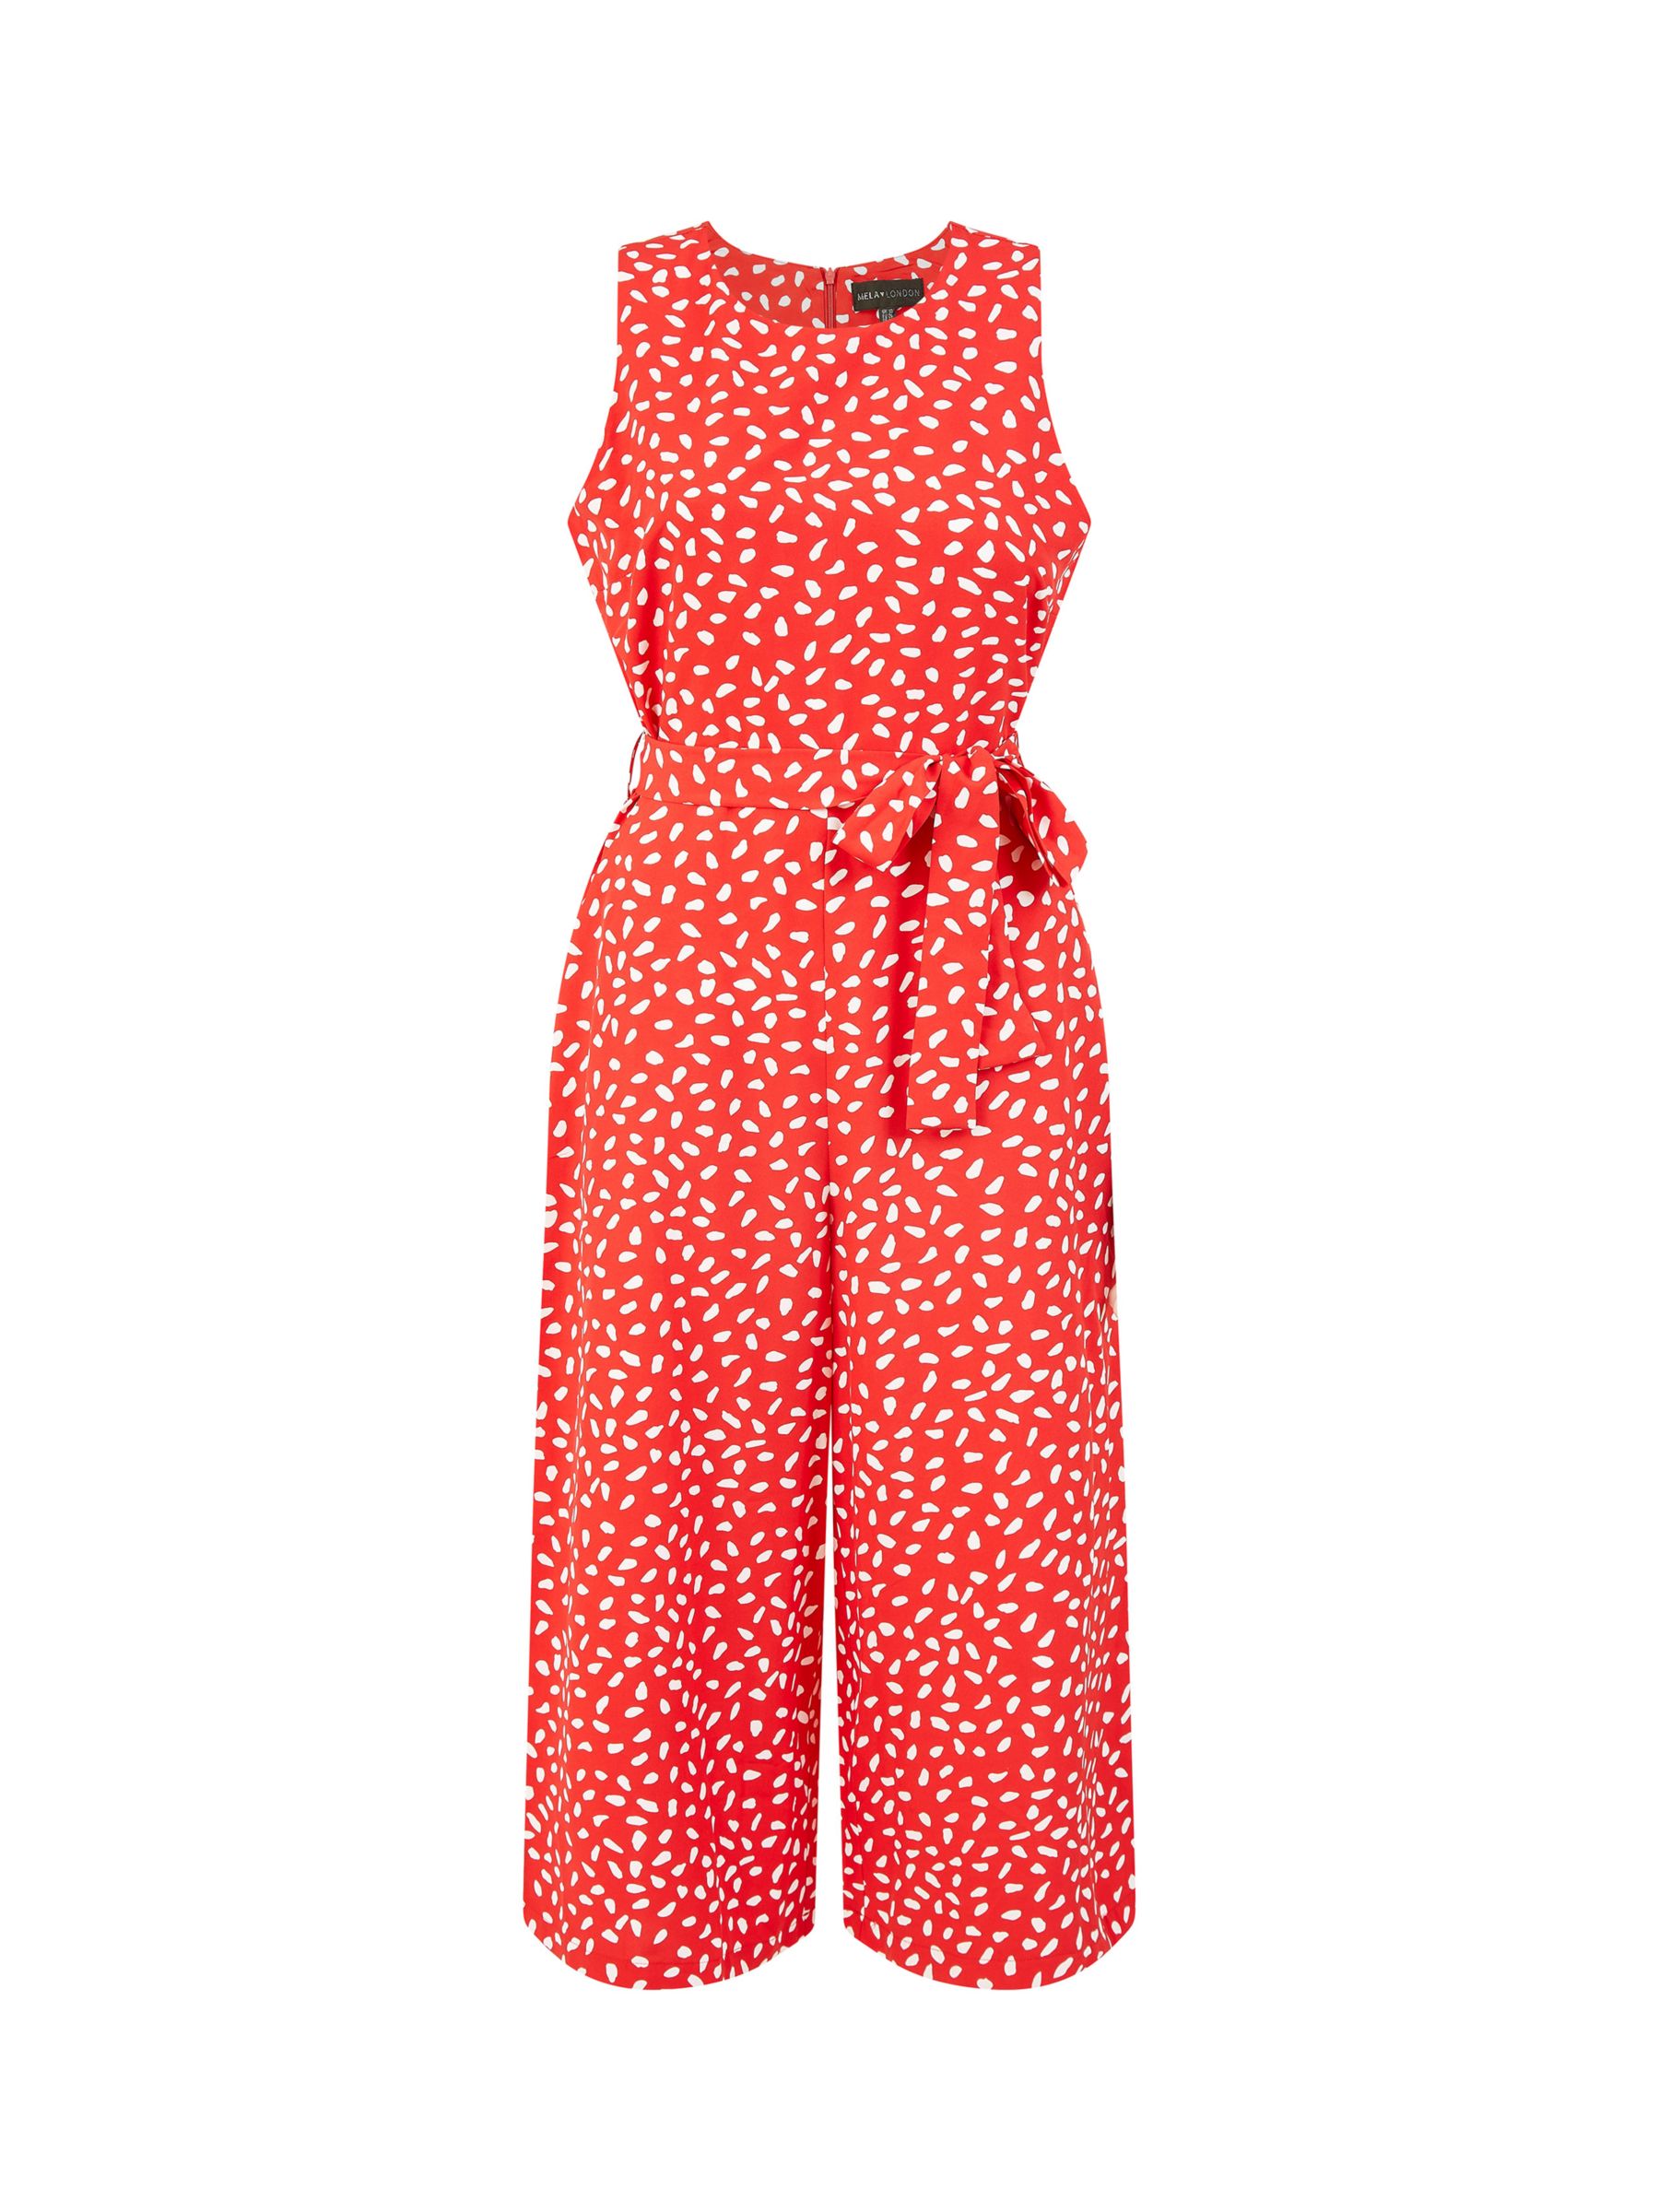 Mela London Dash Print Culotte Jumpsuit, Red, 6